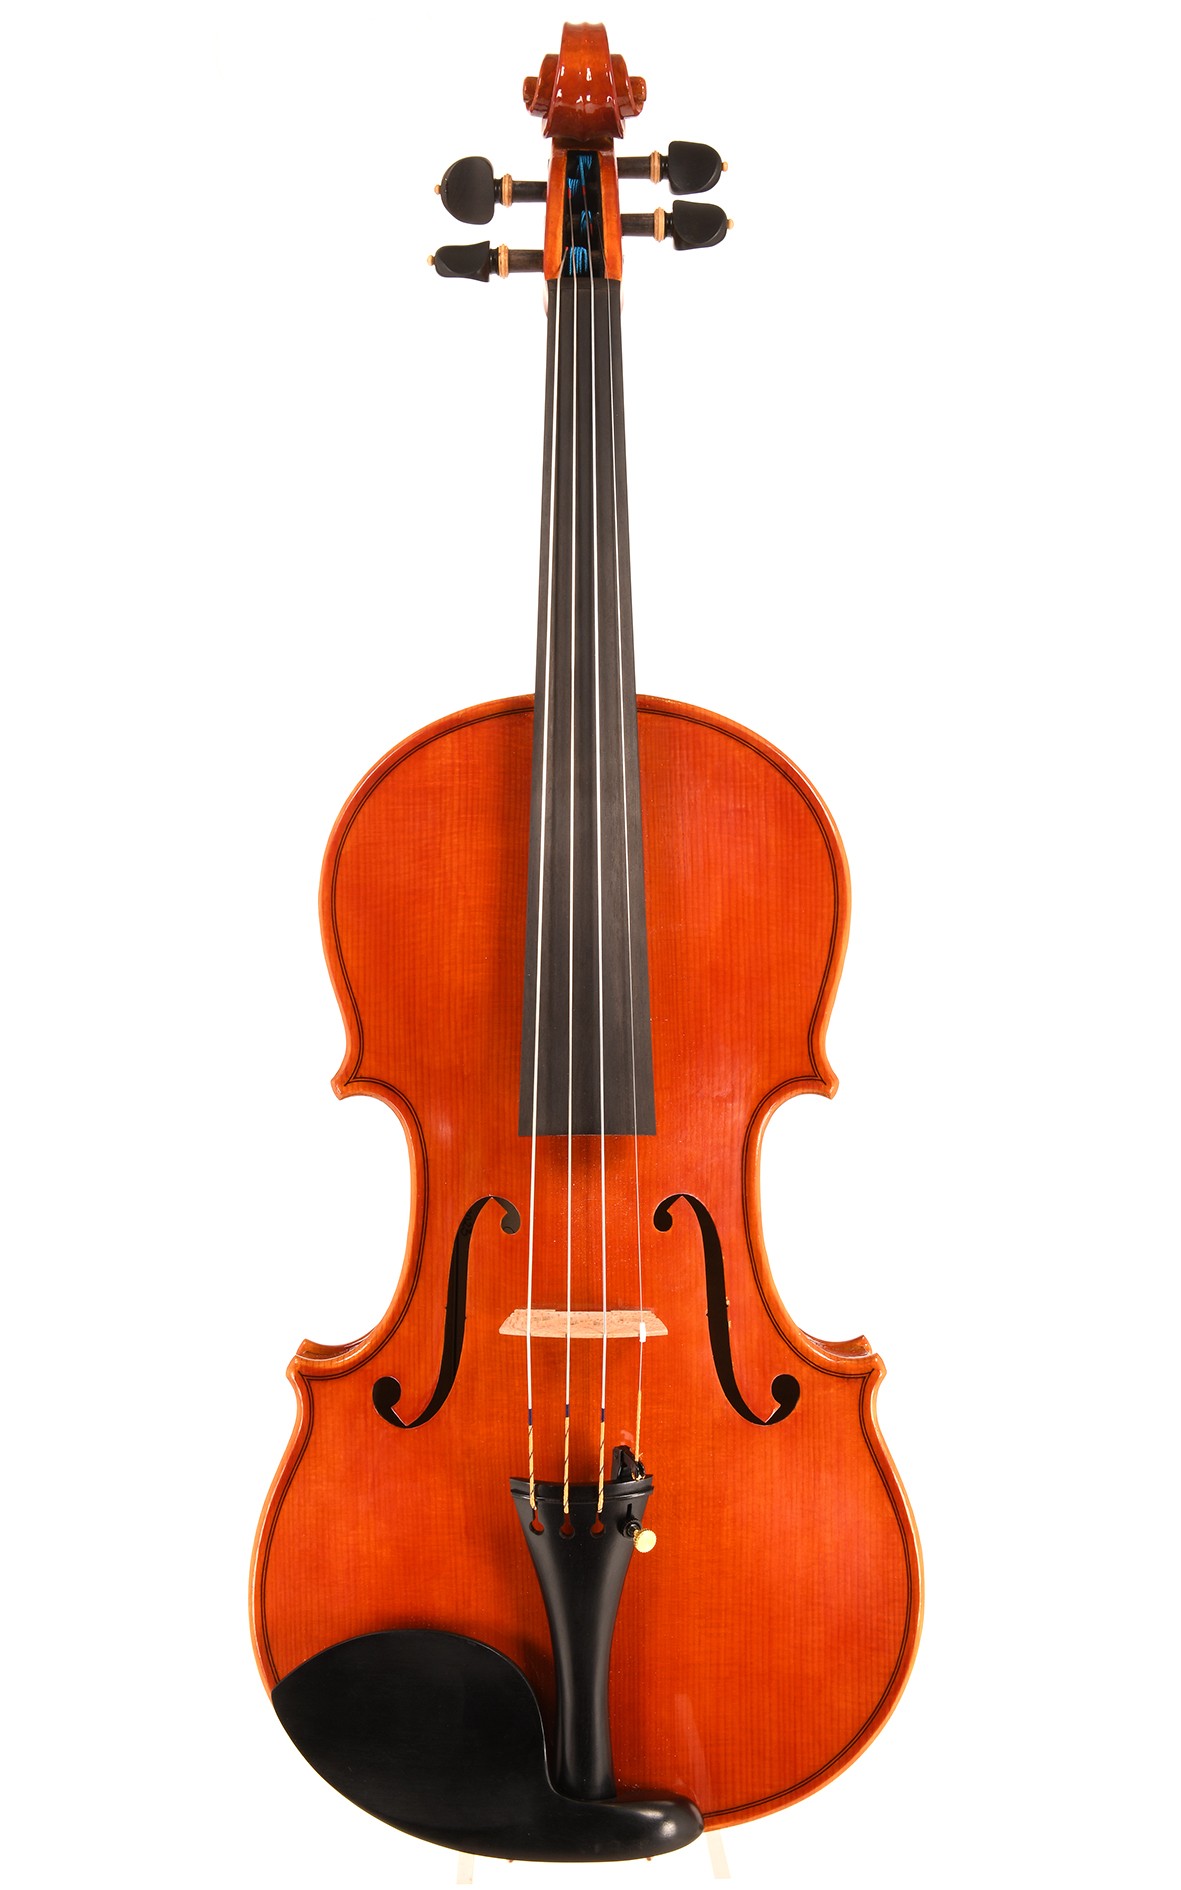 Mauro Lucini Cremona violin